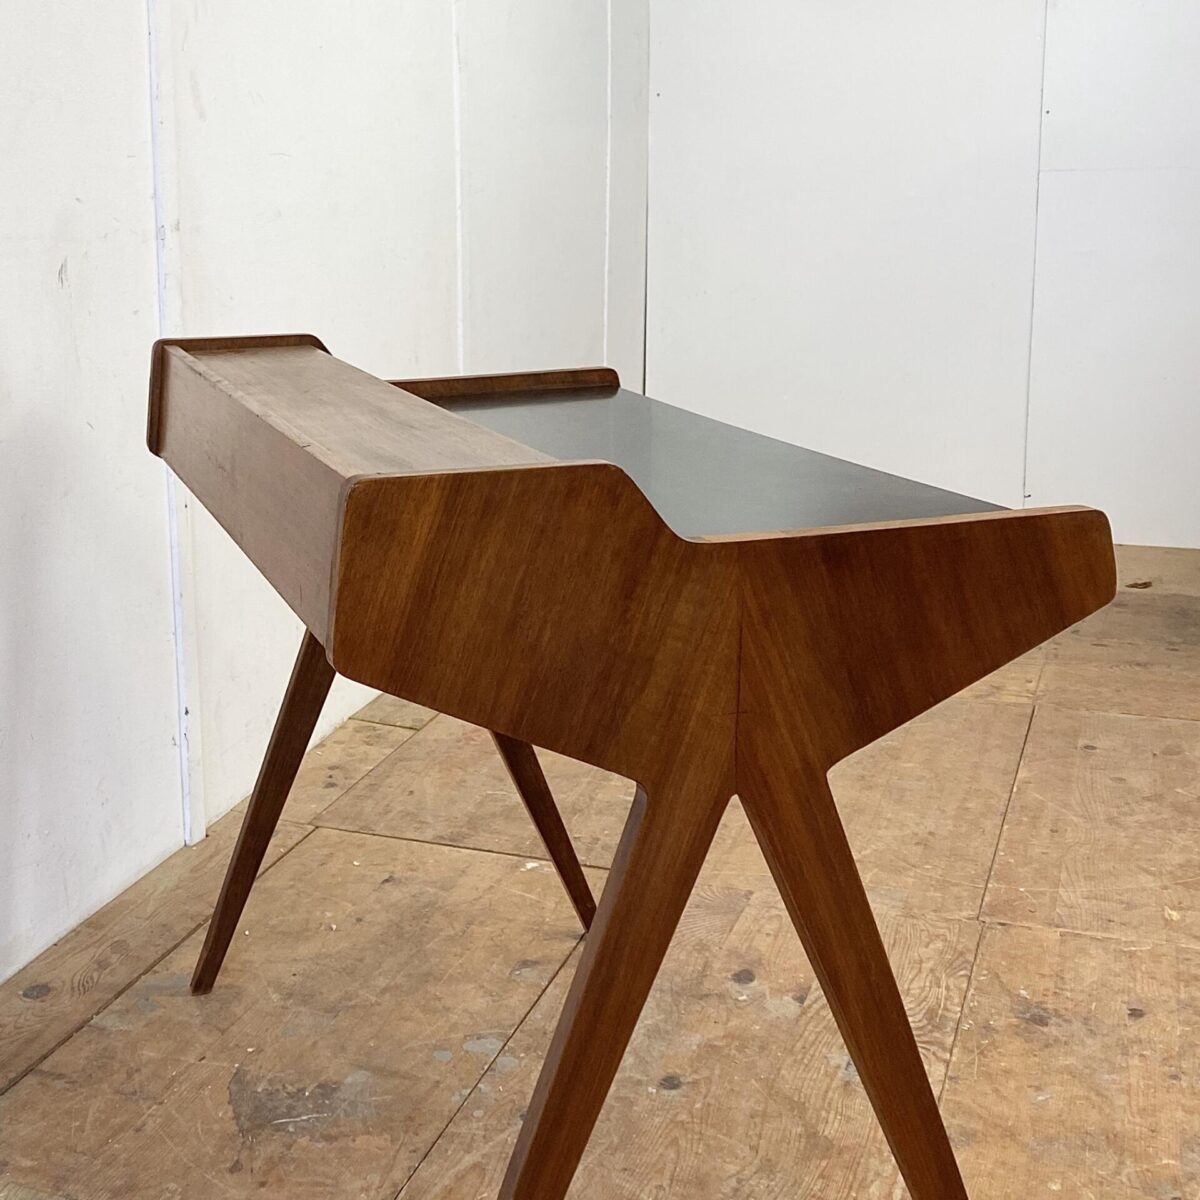 Vintage Nussbaum Schreibtisch. 105x60cm Tischhöhe 75cm. Die Tischfläche und die Schubladen Front ist mit schwarzem Kunstharz (Kelko) Beschichtet. Diverse Furnier Ausbrüche frisch eingesetzt.